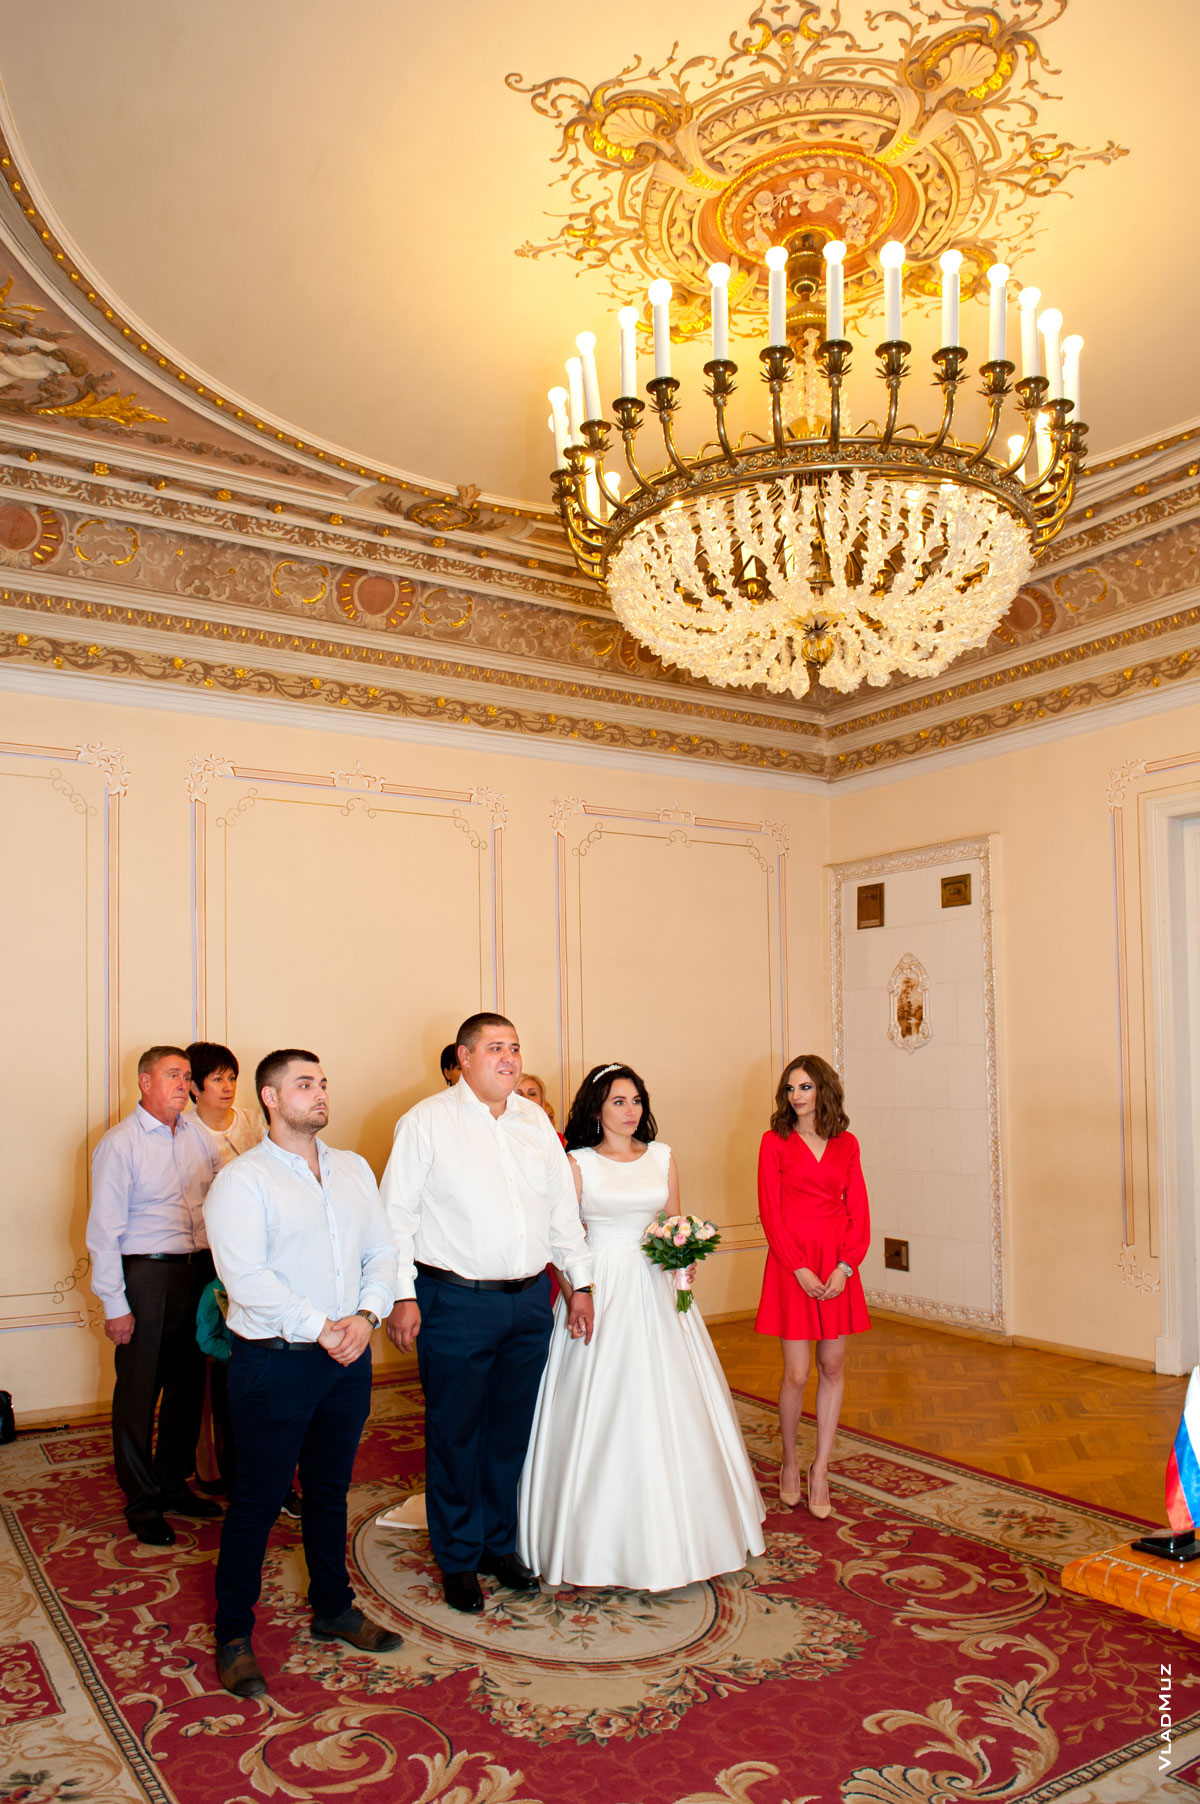 ЗАГС в Новочеркасске на Московской: фото молодоженов, почетных свидетелей и родителей свадебной пары